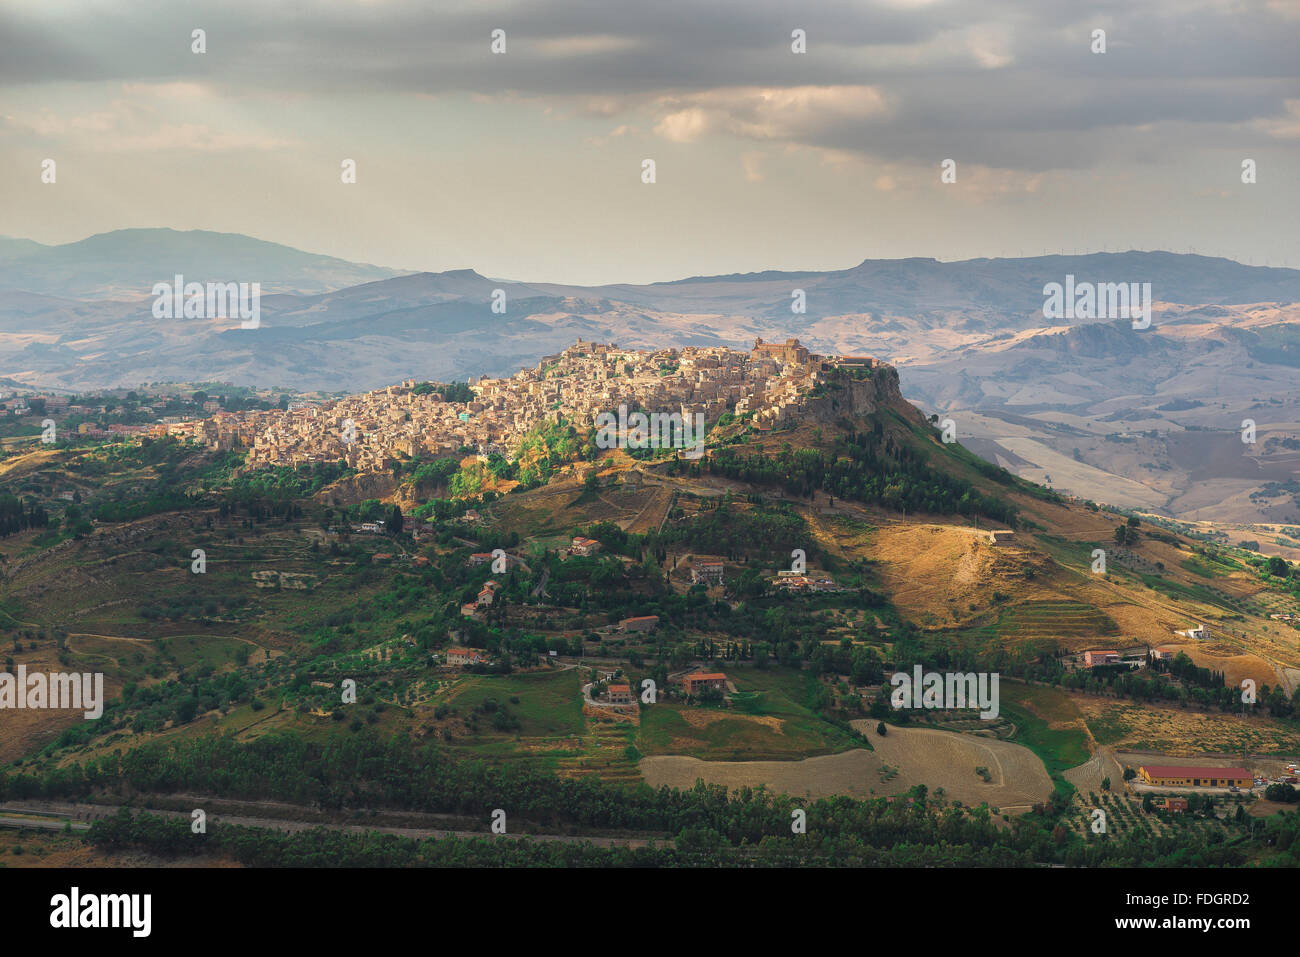 Paysage sicilien, vue aérienne de la ville historique de Calascibetta, au sommet d'une colline, dans le centre de la Sicile. Banque D'Images